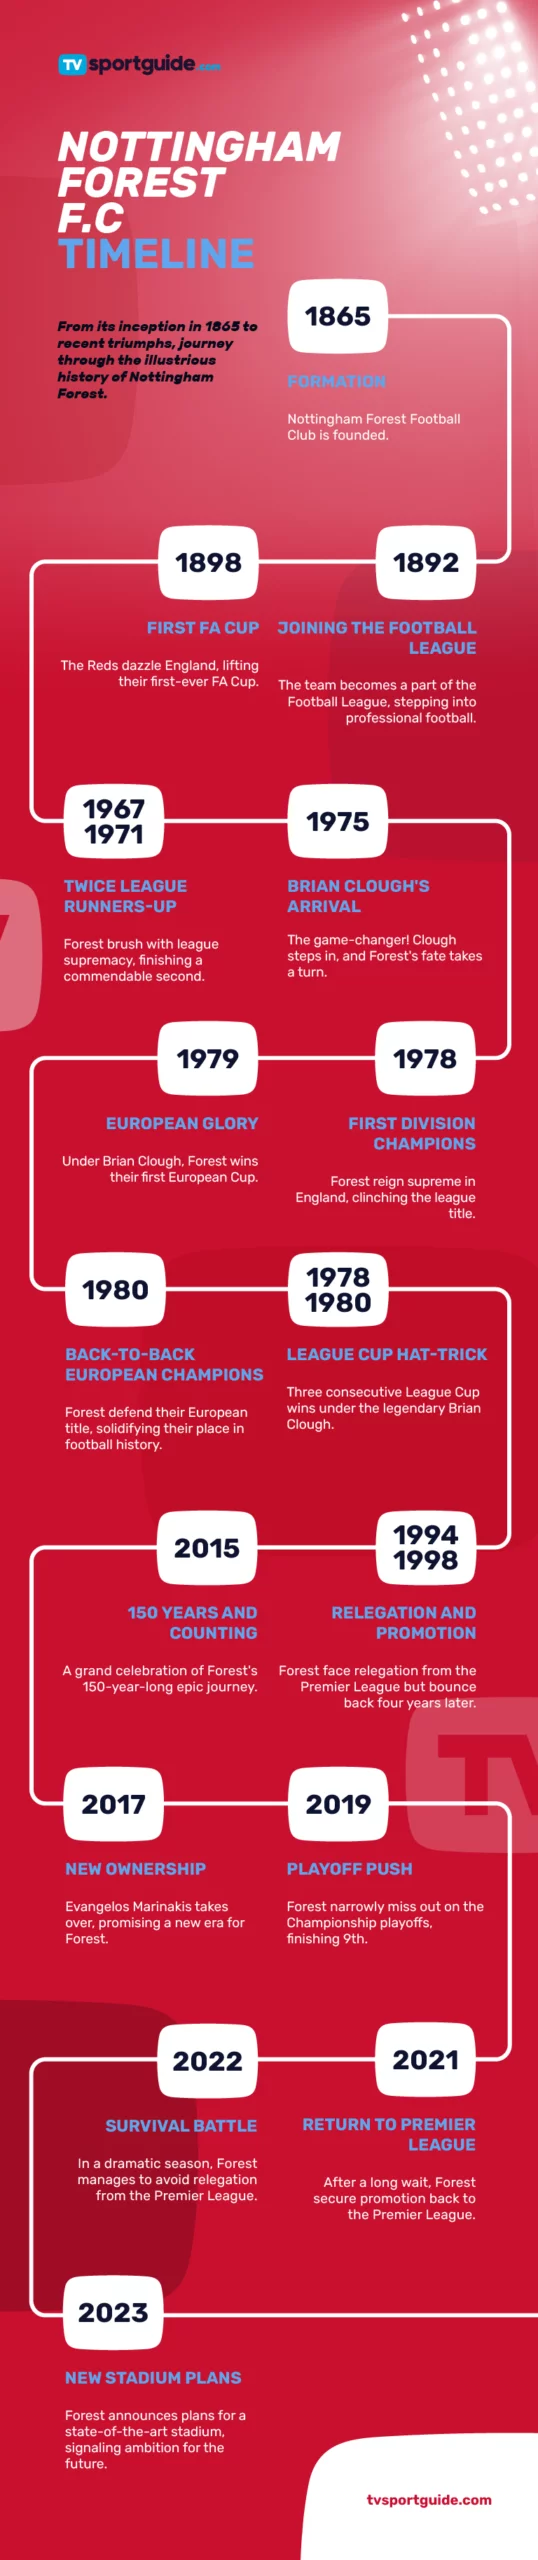 Nottingham Forest F.C. Timeline